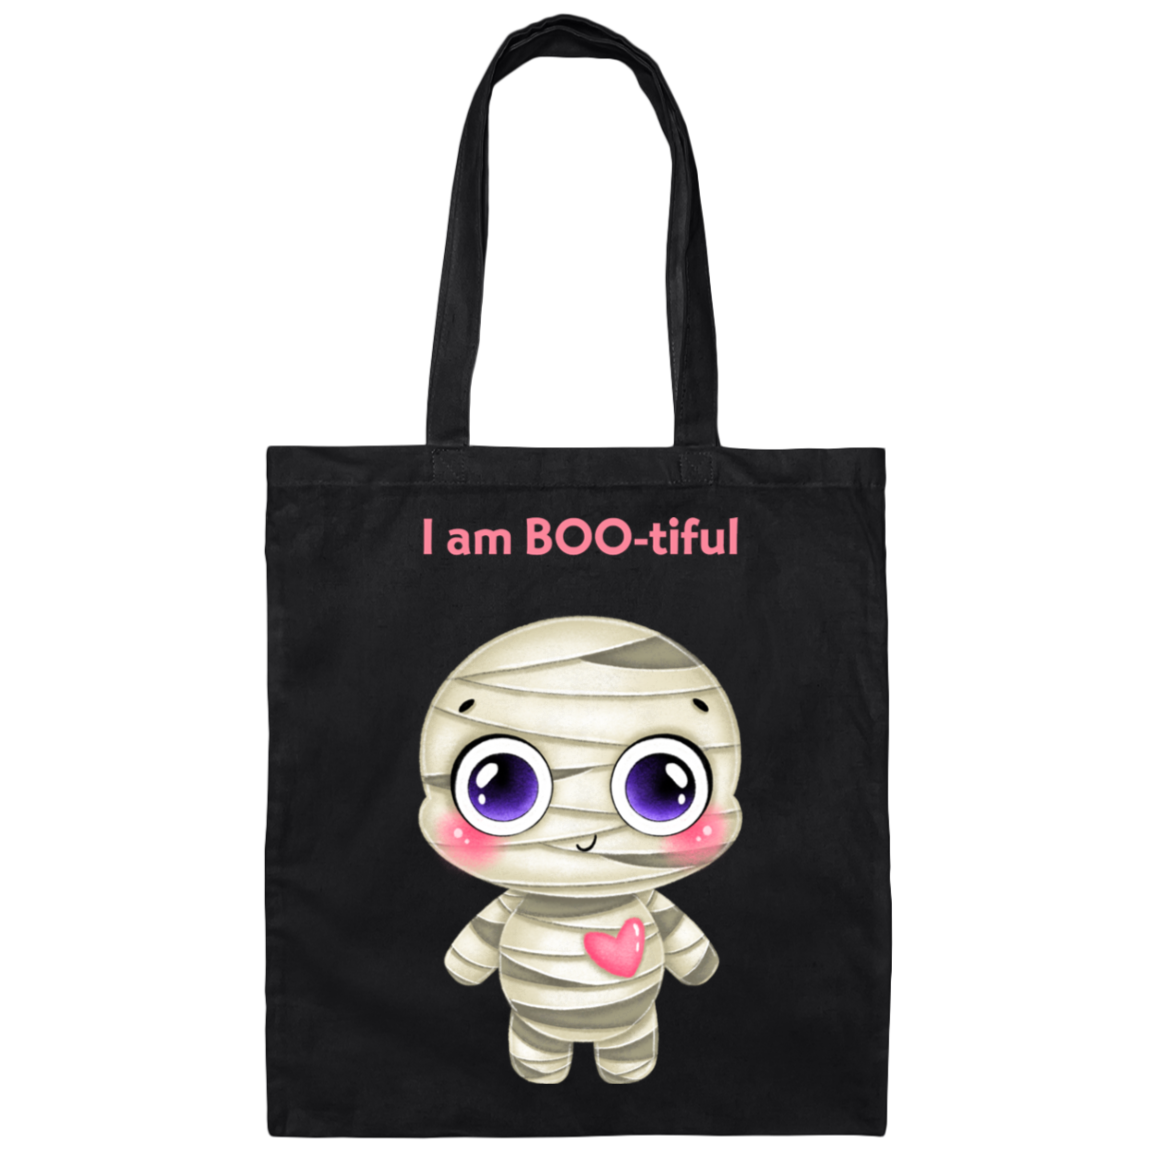 I am BOO-tiful Canvas Tote Bag